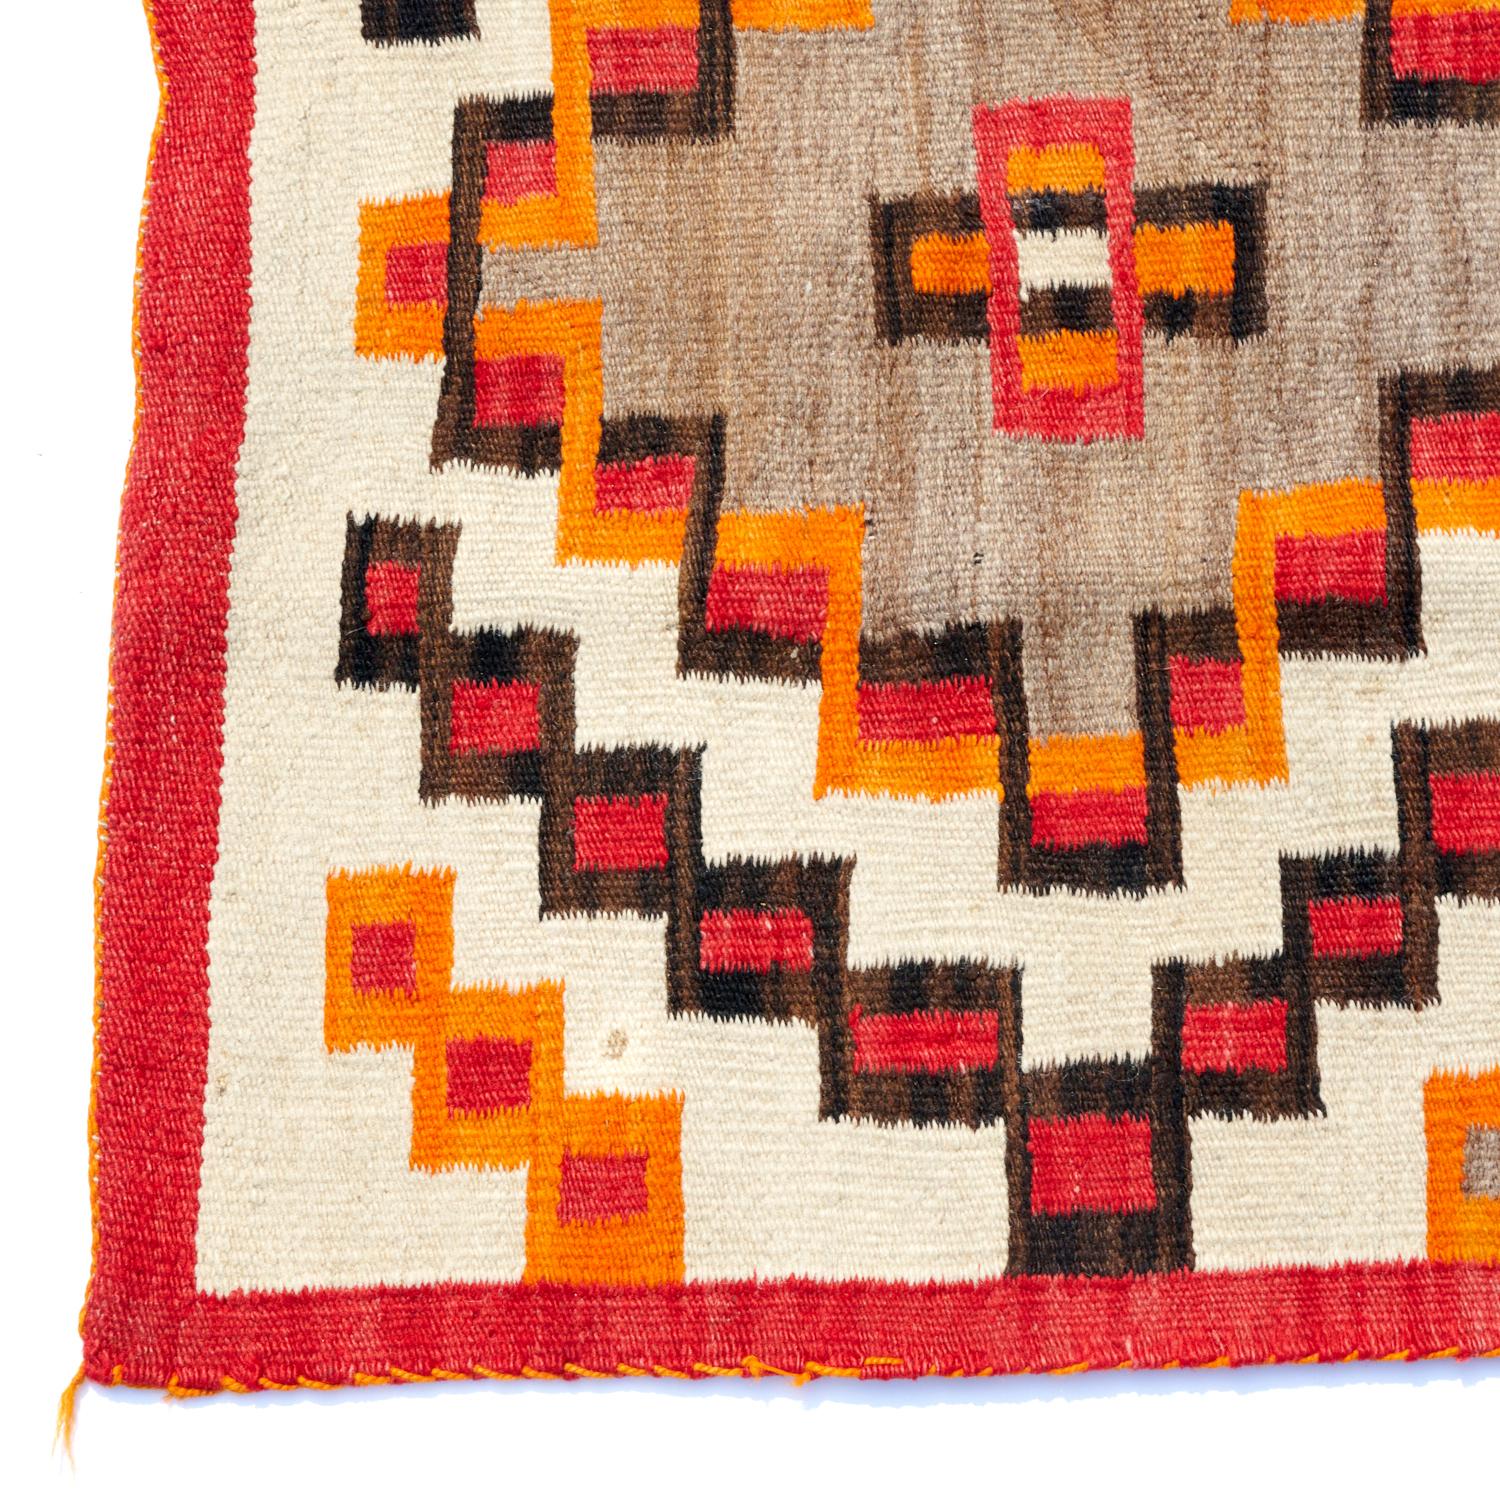 Remarquable tapis/pendaison murale Navajo de la quatrième phase. Laine lourde, densément tissée, avec un motif géométrique rouge, noir et orange sur un fond crème et marron/gris, avec un liseré orange. Les lignes paresseuses, la chaîne de laine et